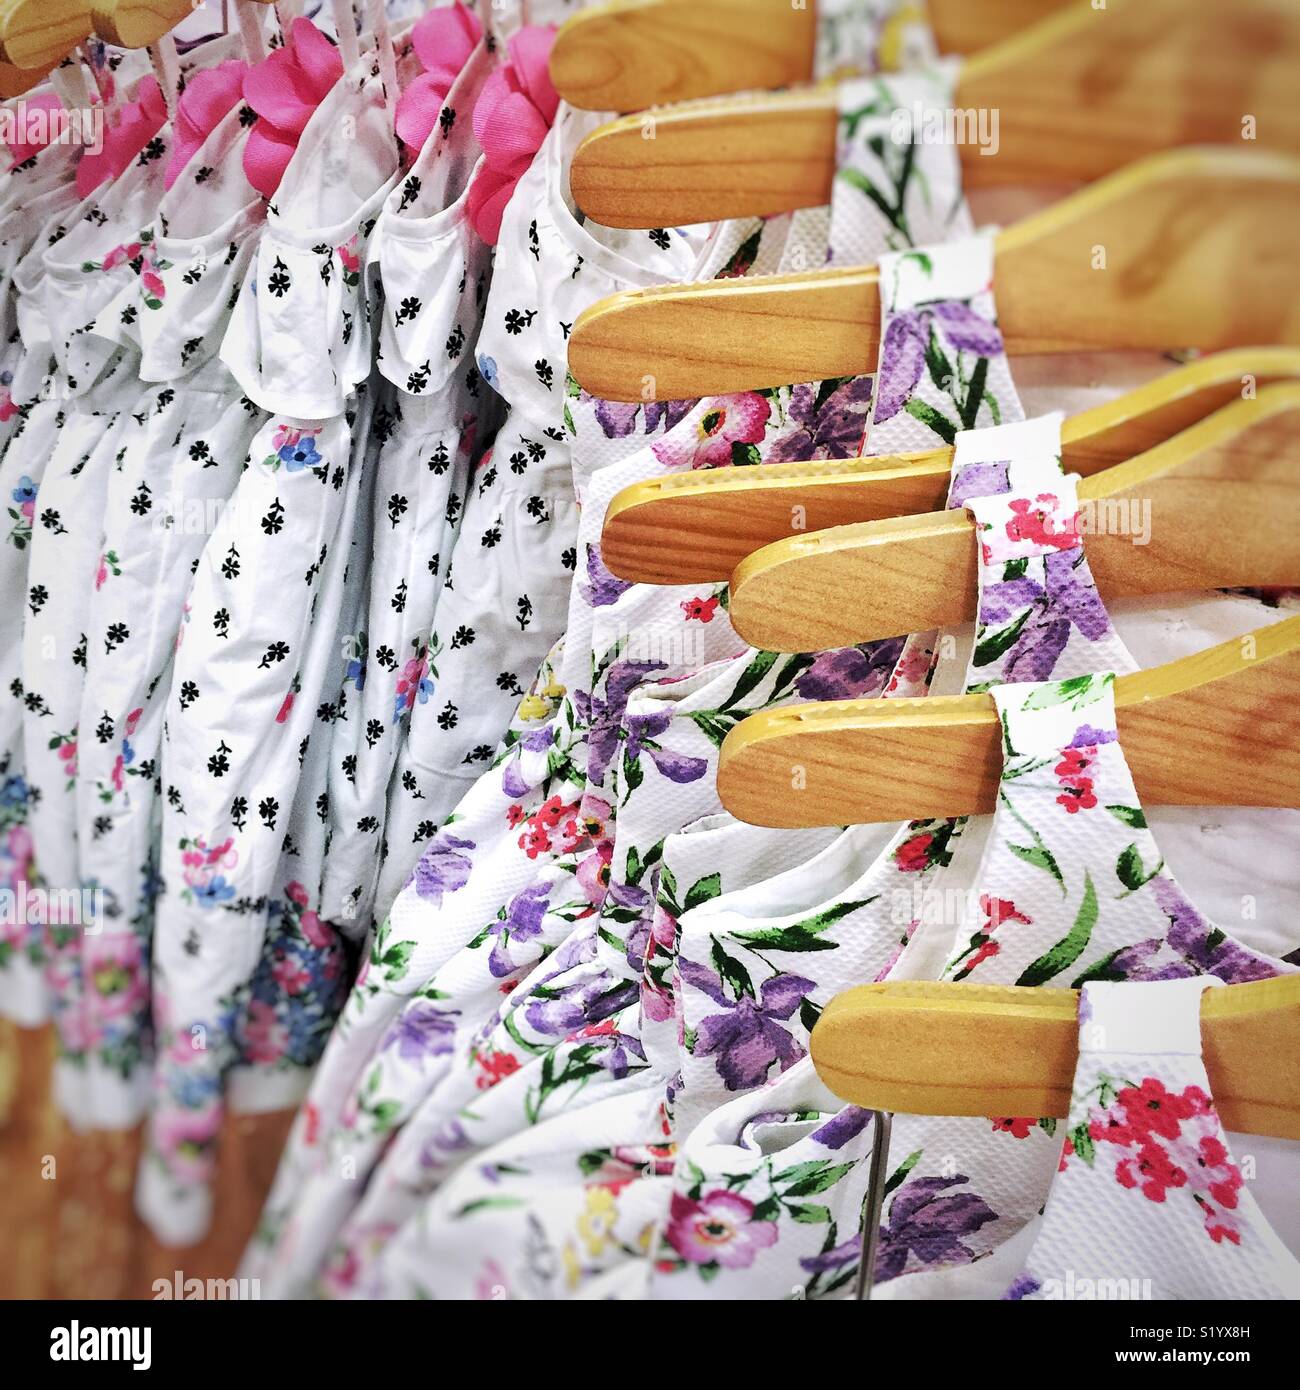 Carino floreale Abiti da bambino su portabiti in legno in vendita nel negozio Foto Stock